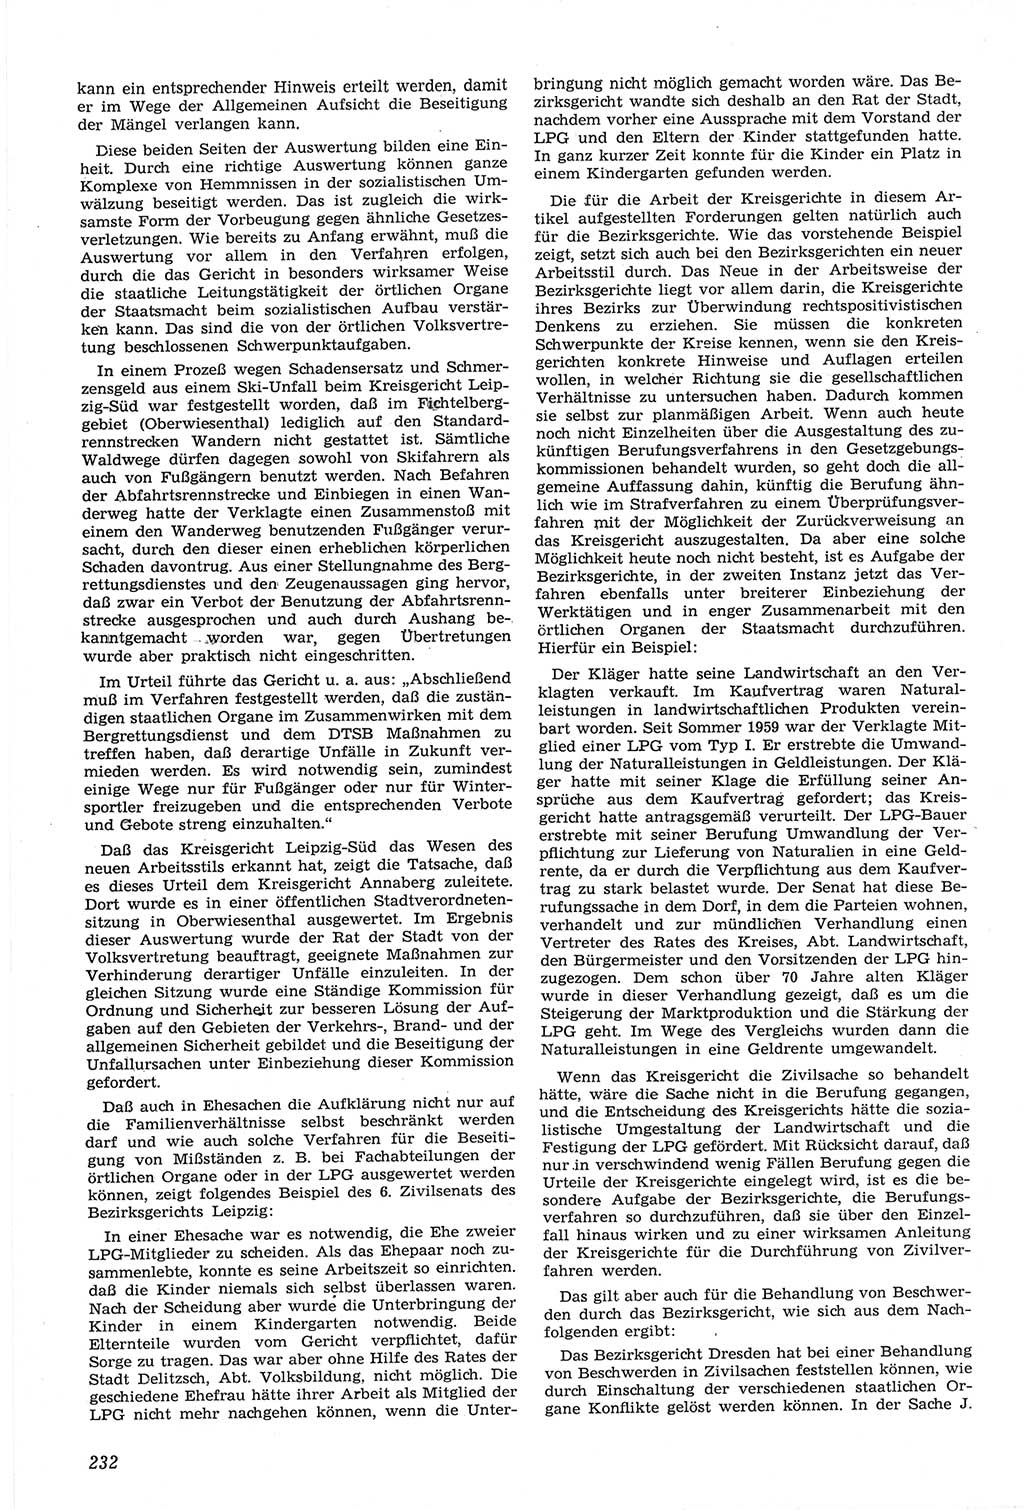 Neue Justiz (NJ), Zeitschrift für Recht und Rechtswissenschaft [Deutsche Demokratische Republik (DDR)], 14. Jahrgang 1960, Seite 232 (NJ DDR 1960, S. 232)